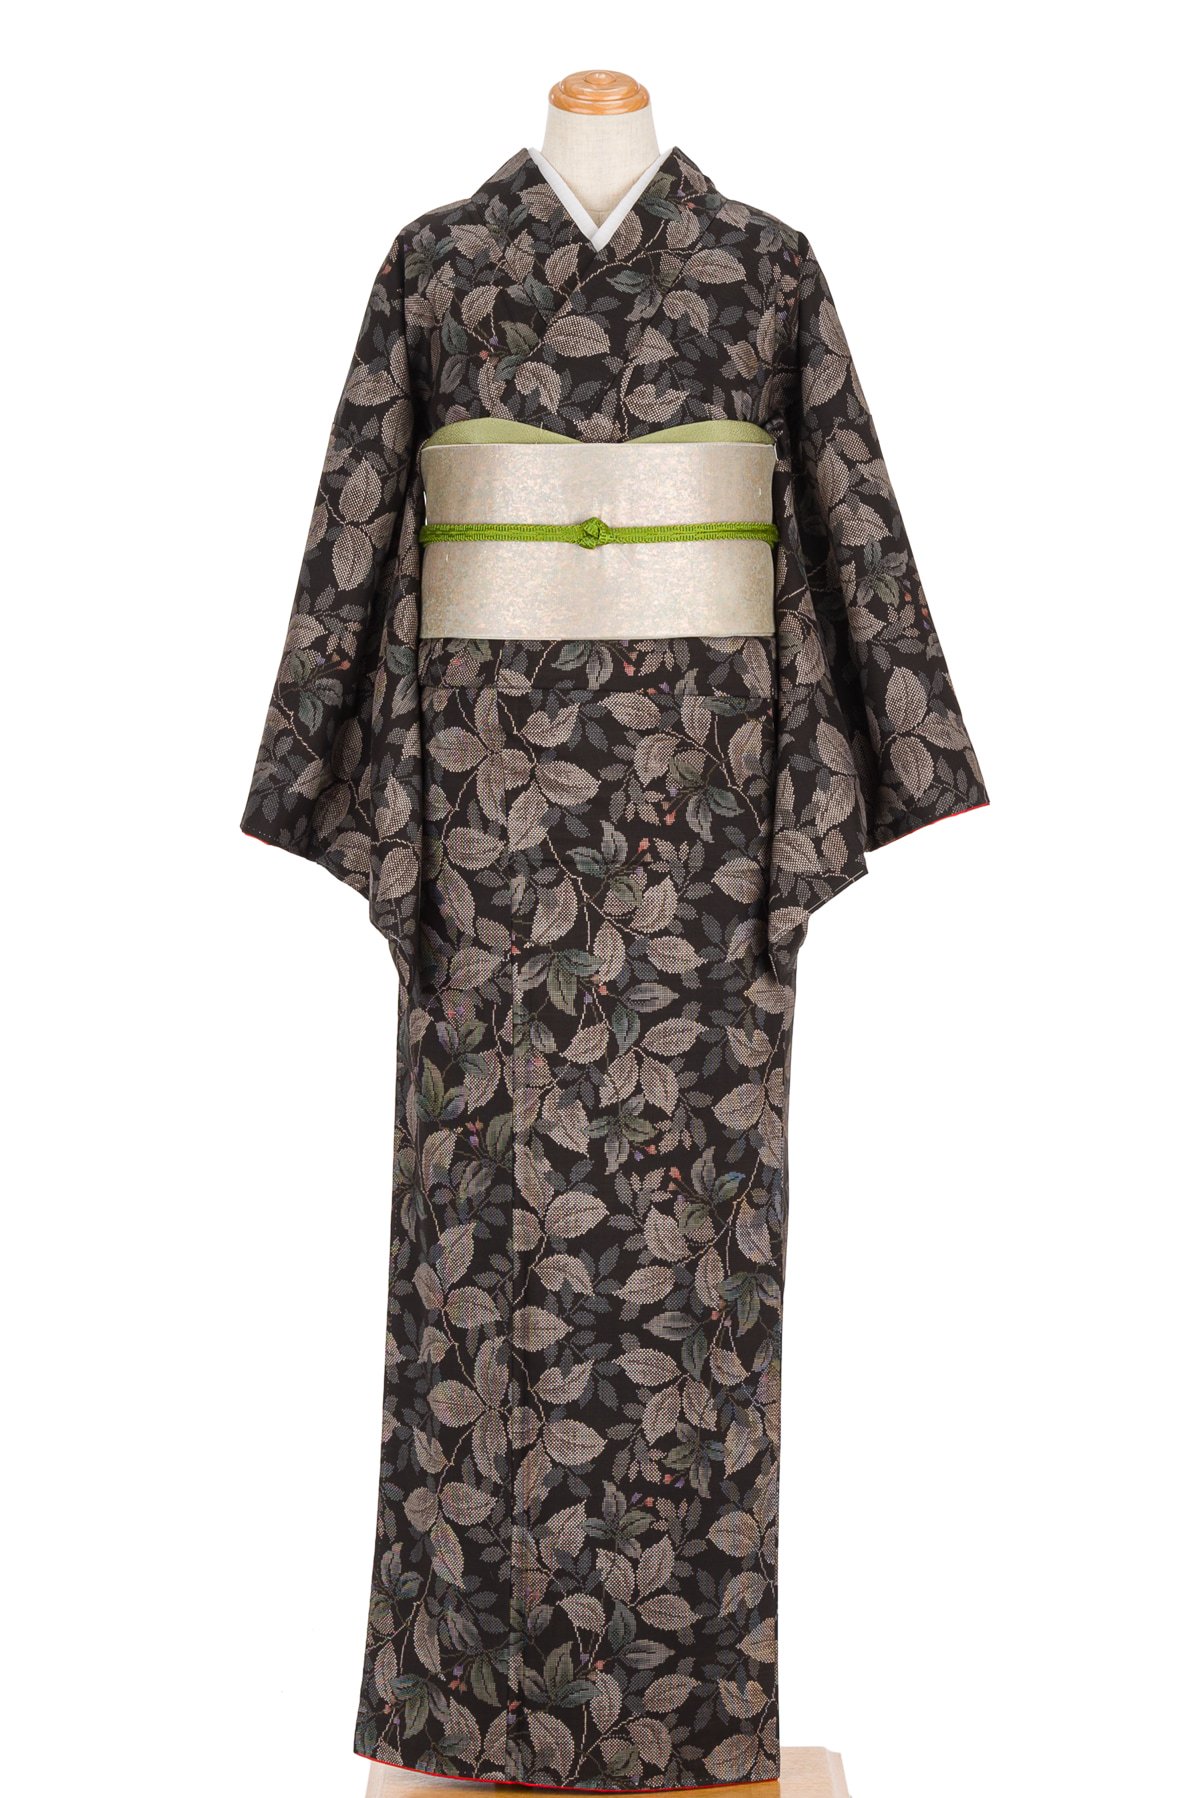 大島紬 葉模様 - からん::アンティーク着物・リサイクル着物の通販サイト